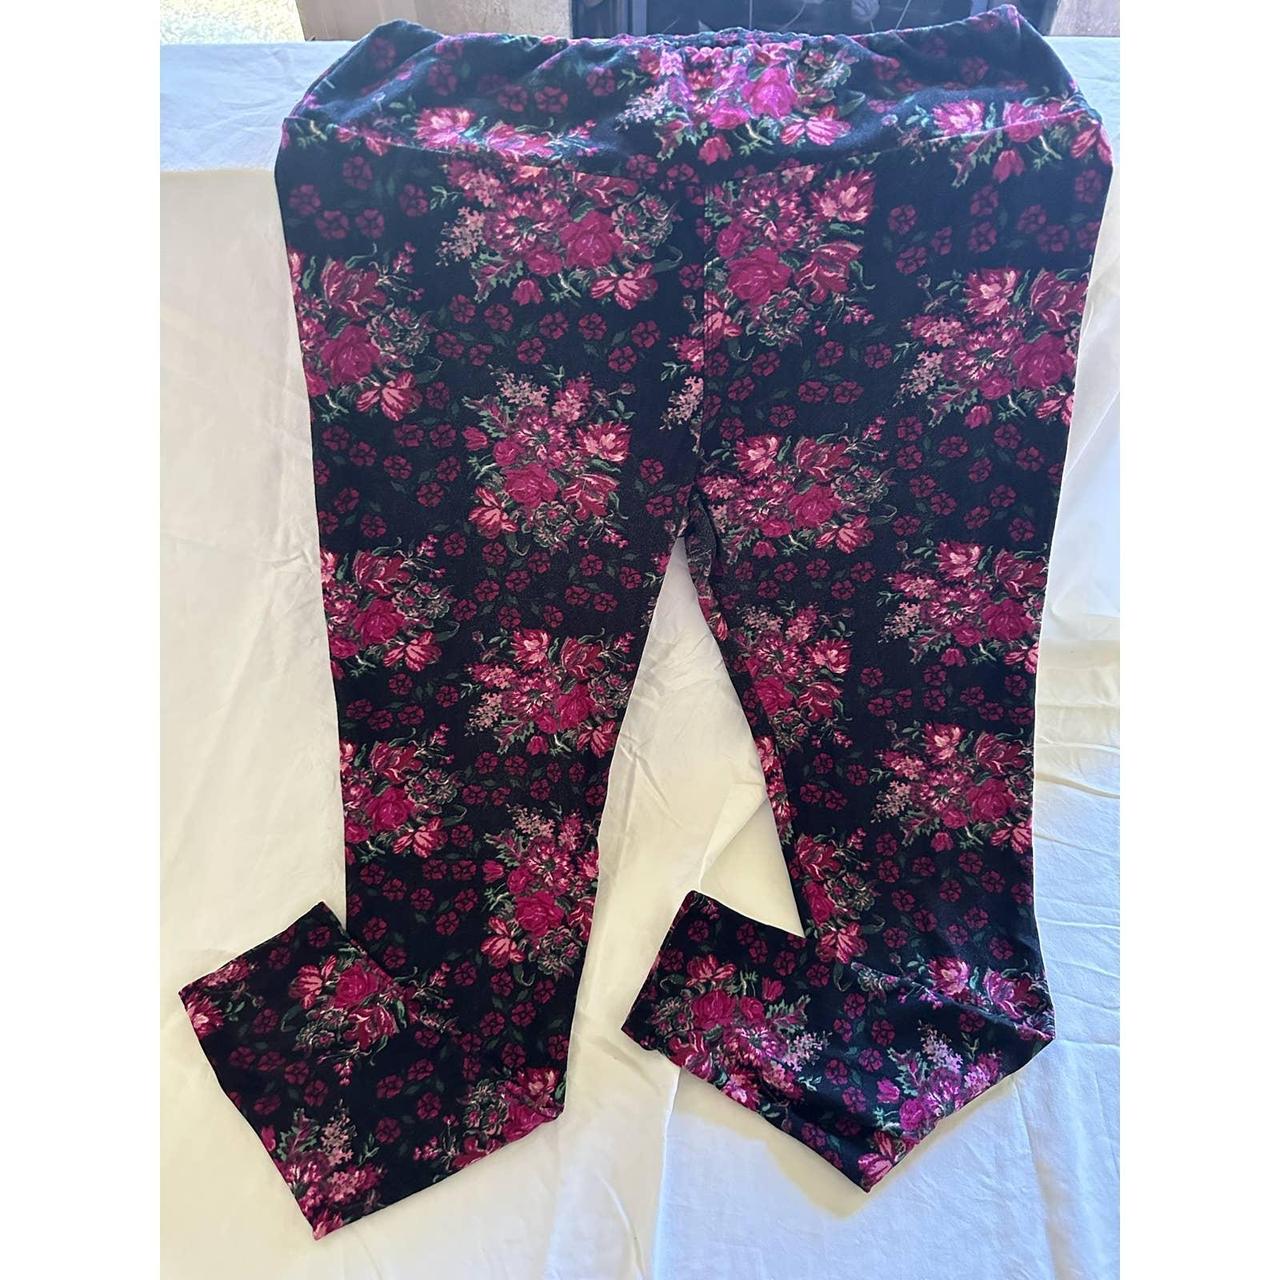 Lularoe T/C Floral leggings #lularoe #t/c leggings - Depop